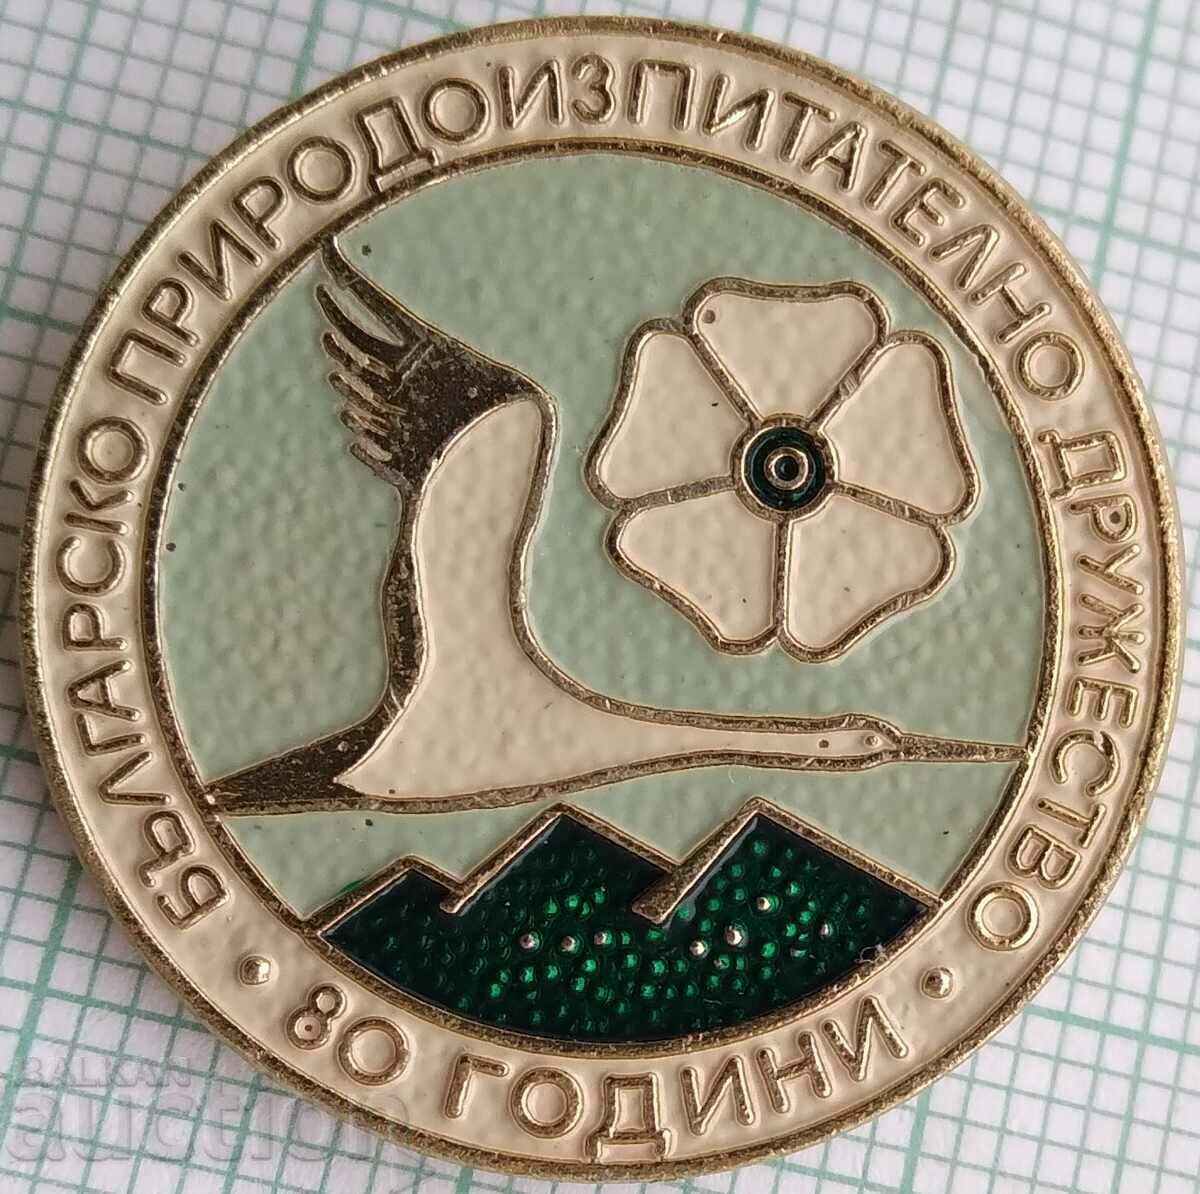 15806 Σήμα - 80 χρόνια Βουλγαρική Εταιρεία Ερευνών για τη Φύση